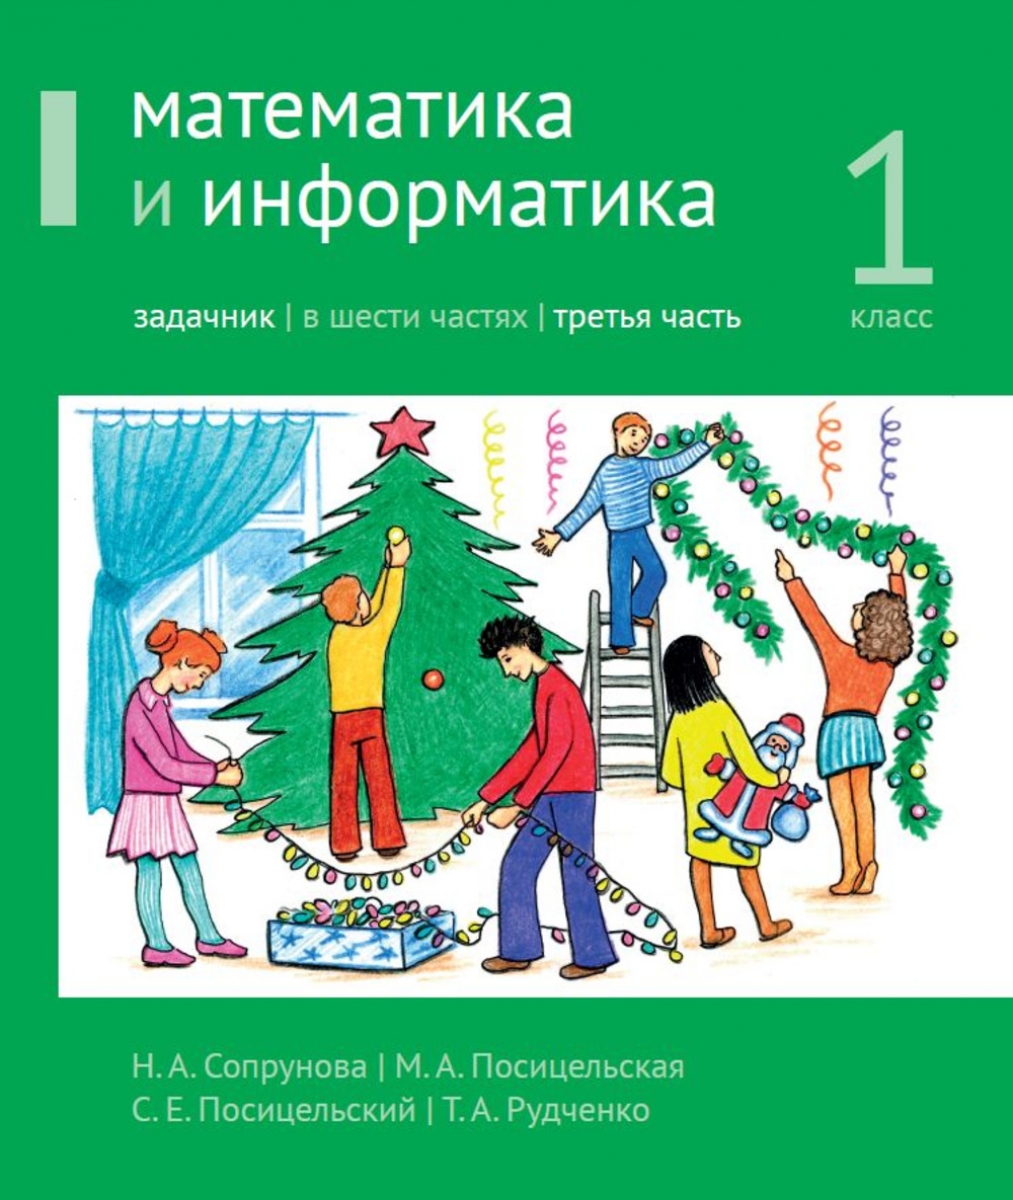 Посицельская М.А., Сопрунова Н.А., Посицельский С.Е. Математика и информатика. 1 класс 